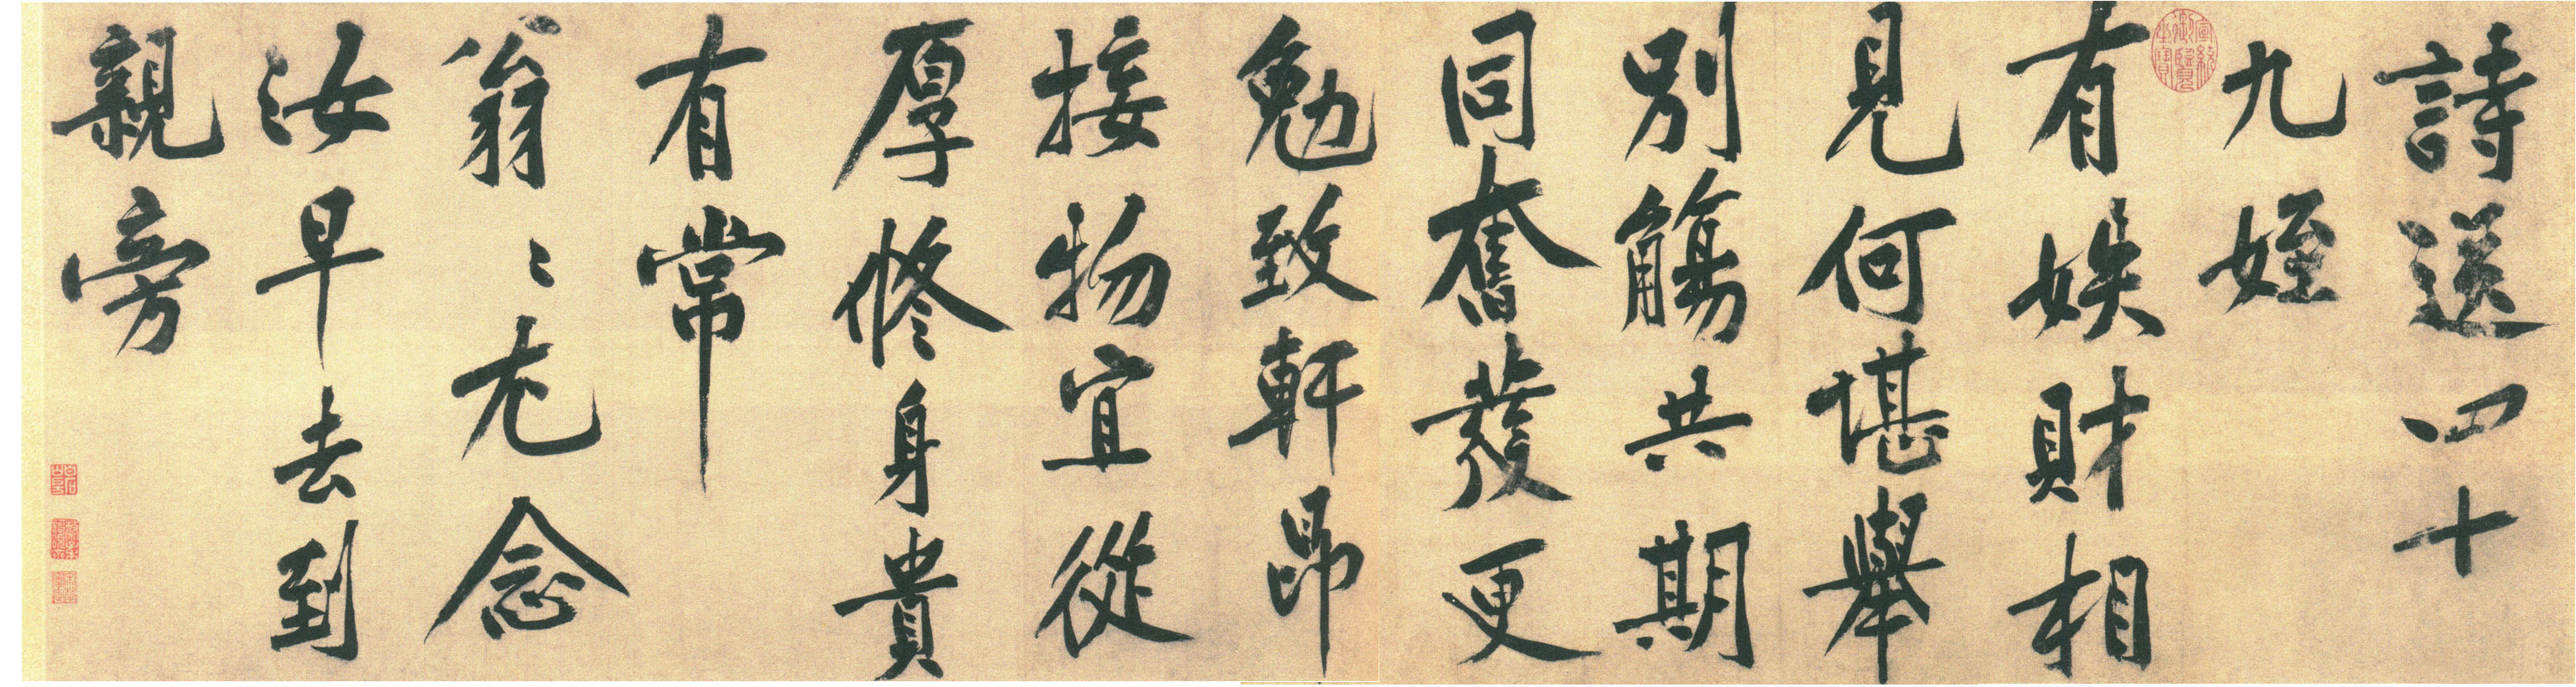 黄庭坚《送四十九侄诗》卷-北京故宫博物院藏(图1)